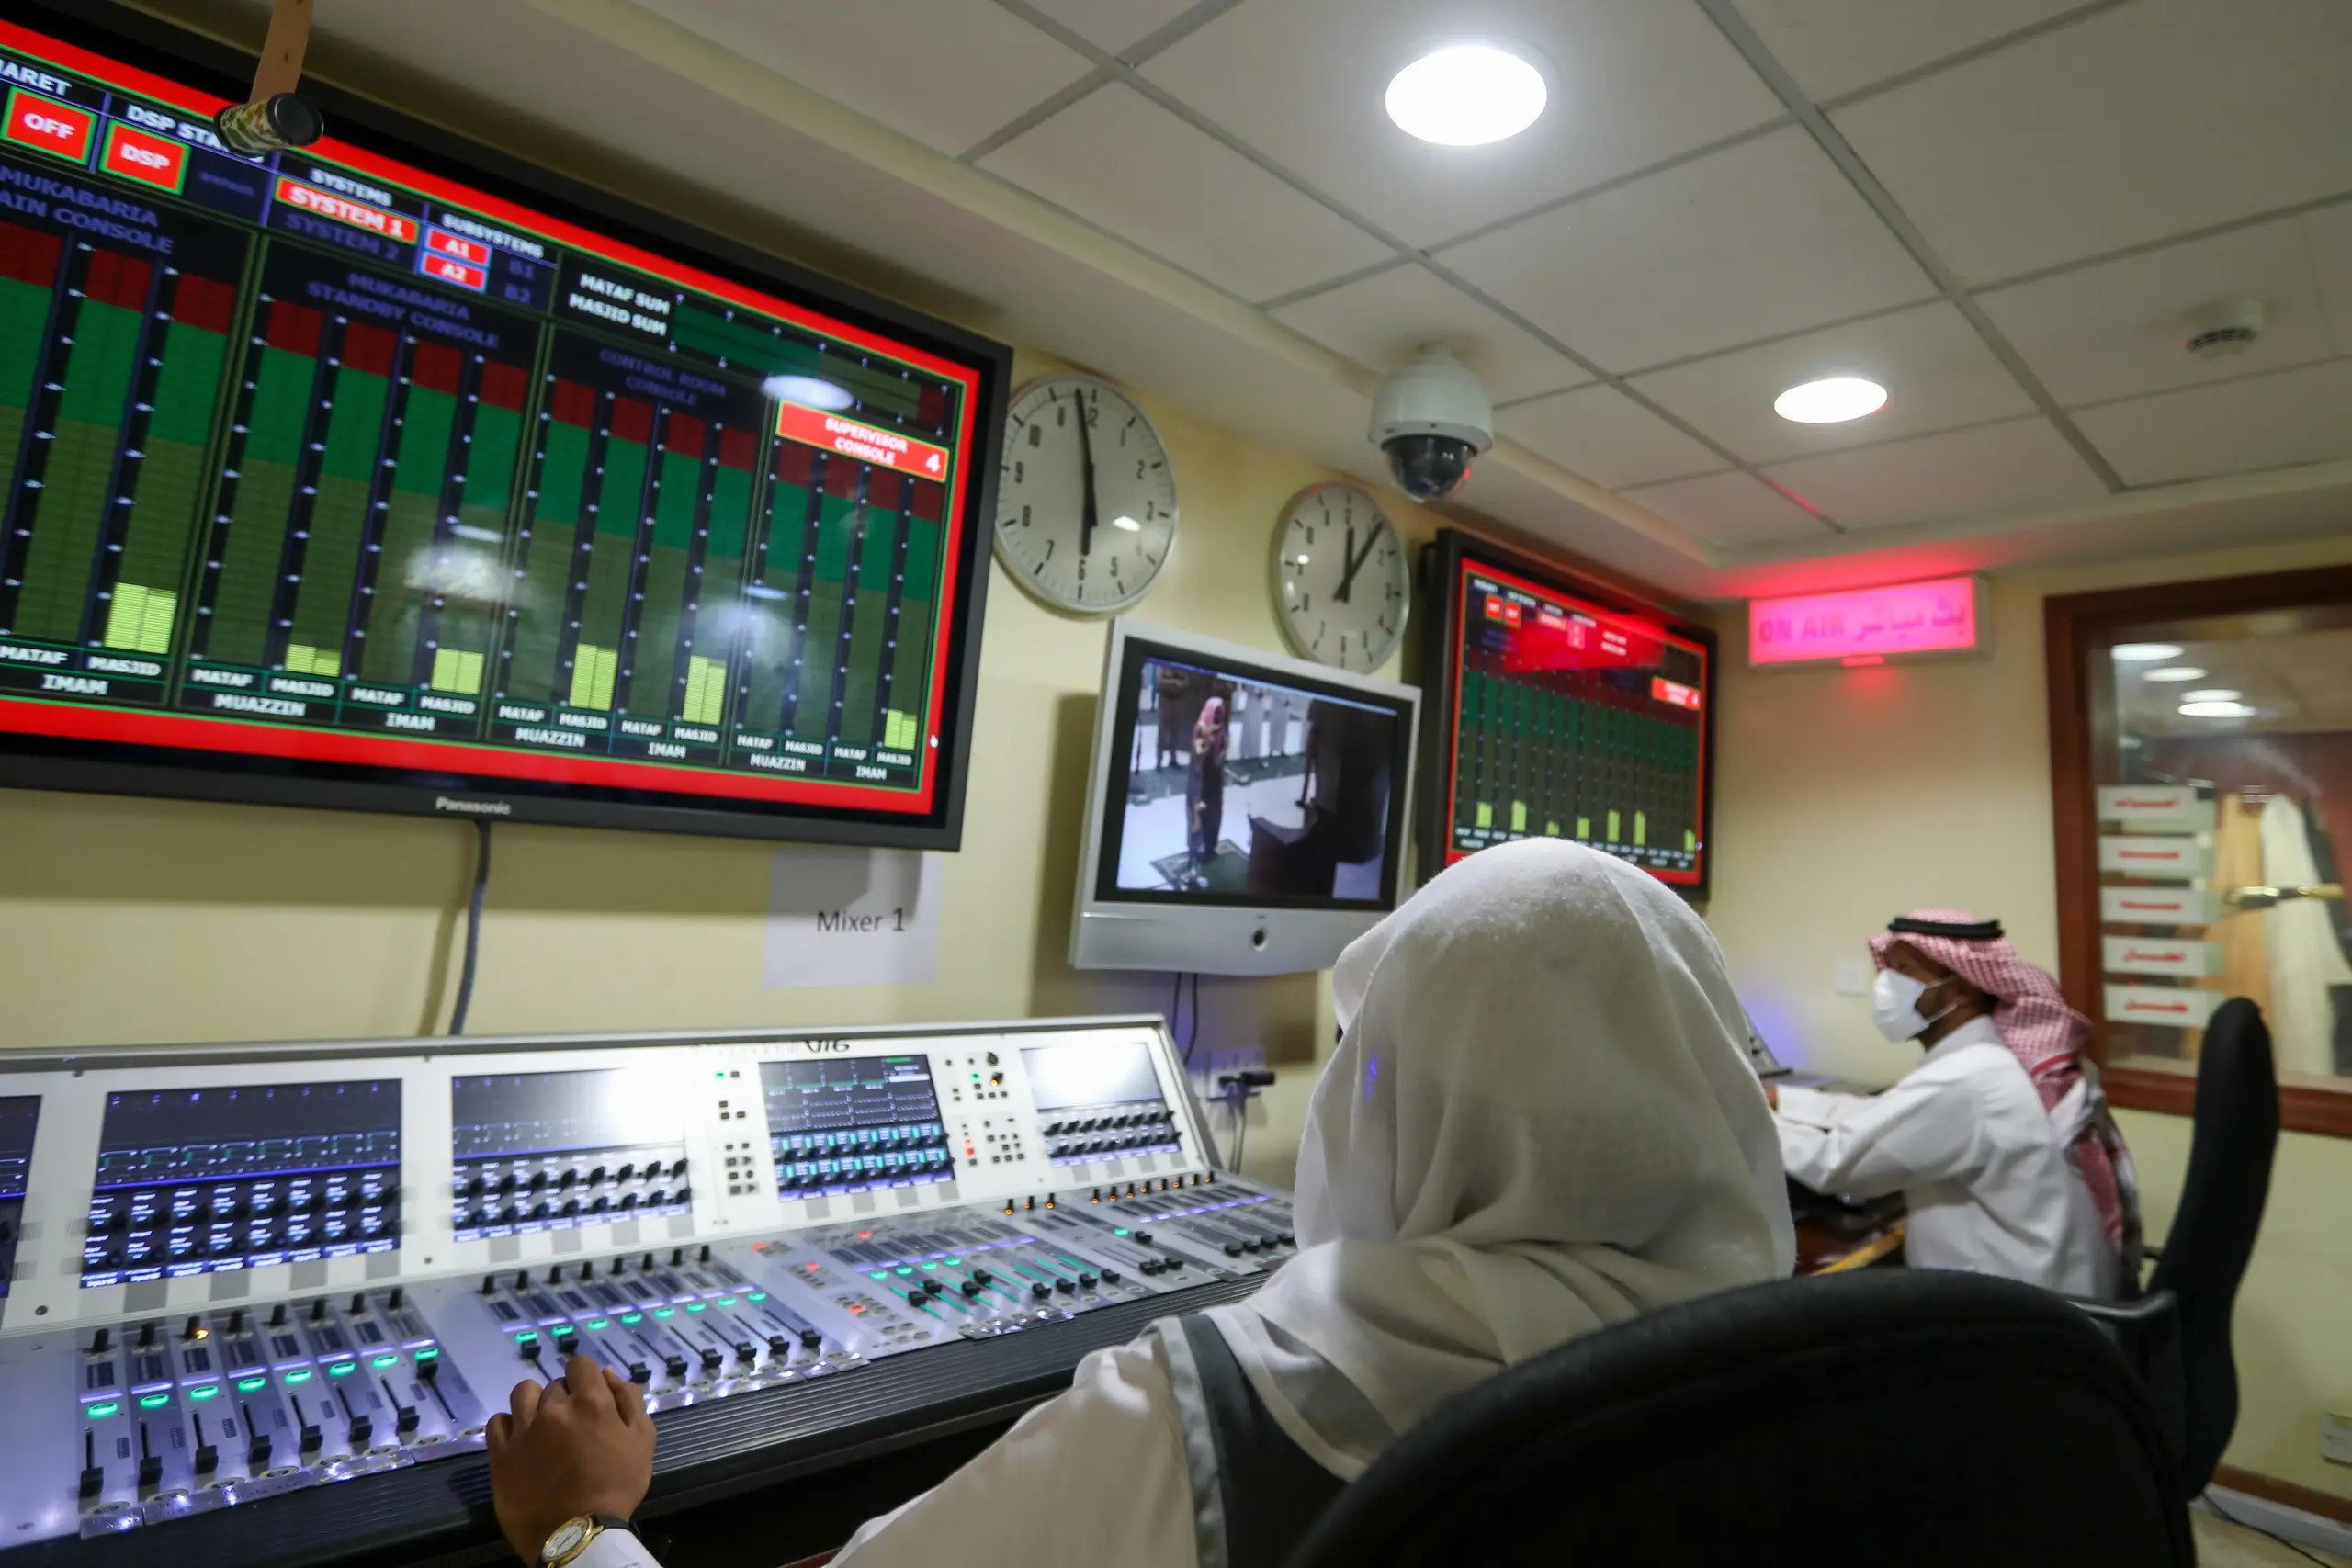 النظام الصوتي في المسجد الحرام من أضخم أنظمة الصوت فى العالم